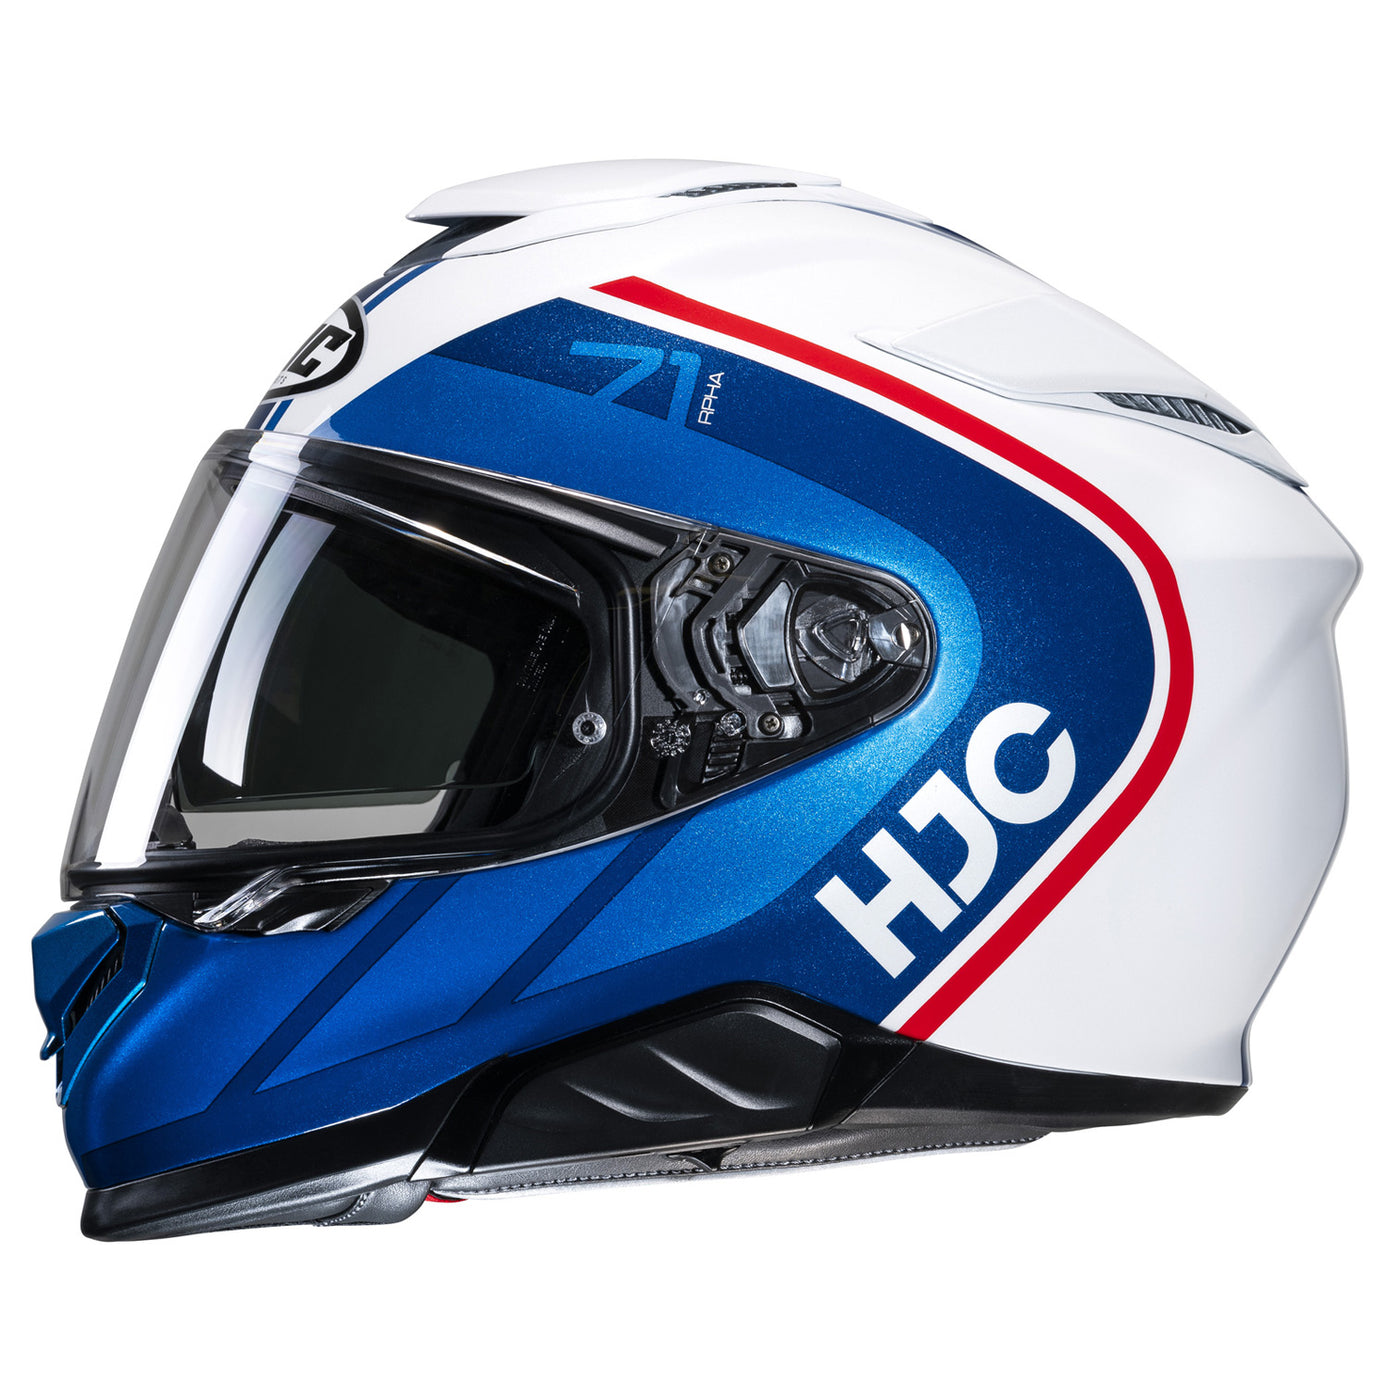 HJC RPHA 71 Mapos Helmet